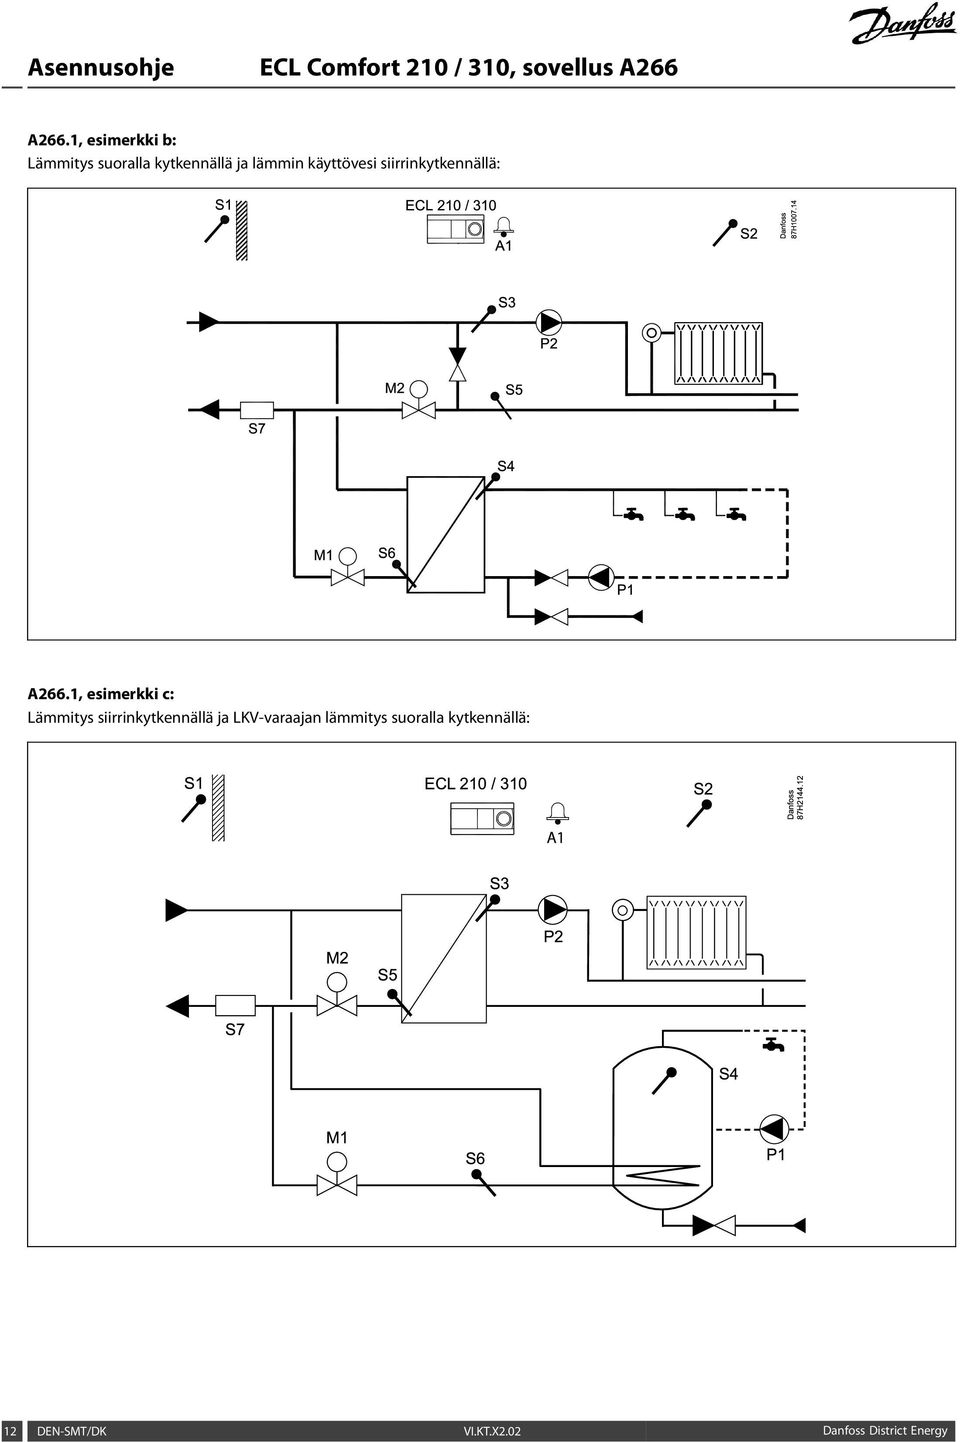 1, esimerkki c: Lämmitys siirrinkytkennällä ja LKV-varaajan lämmitys